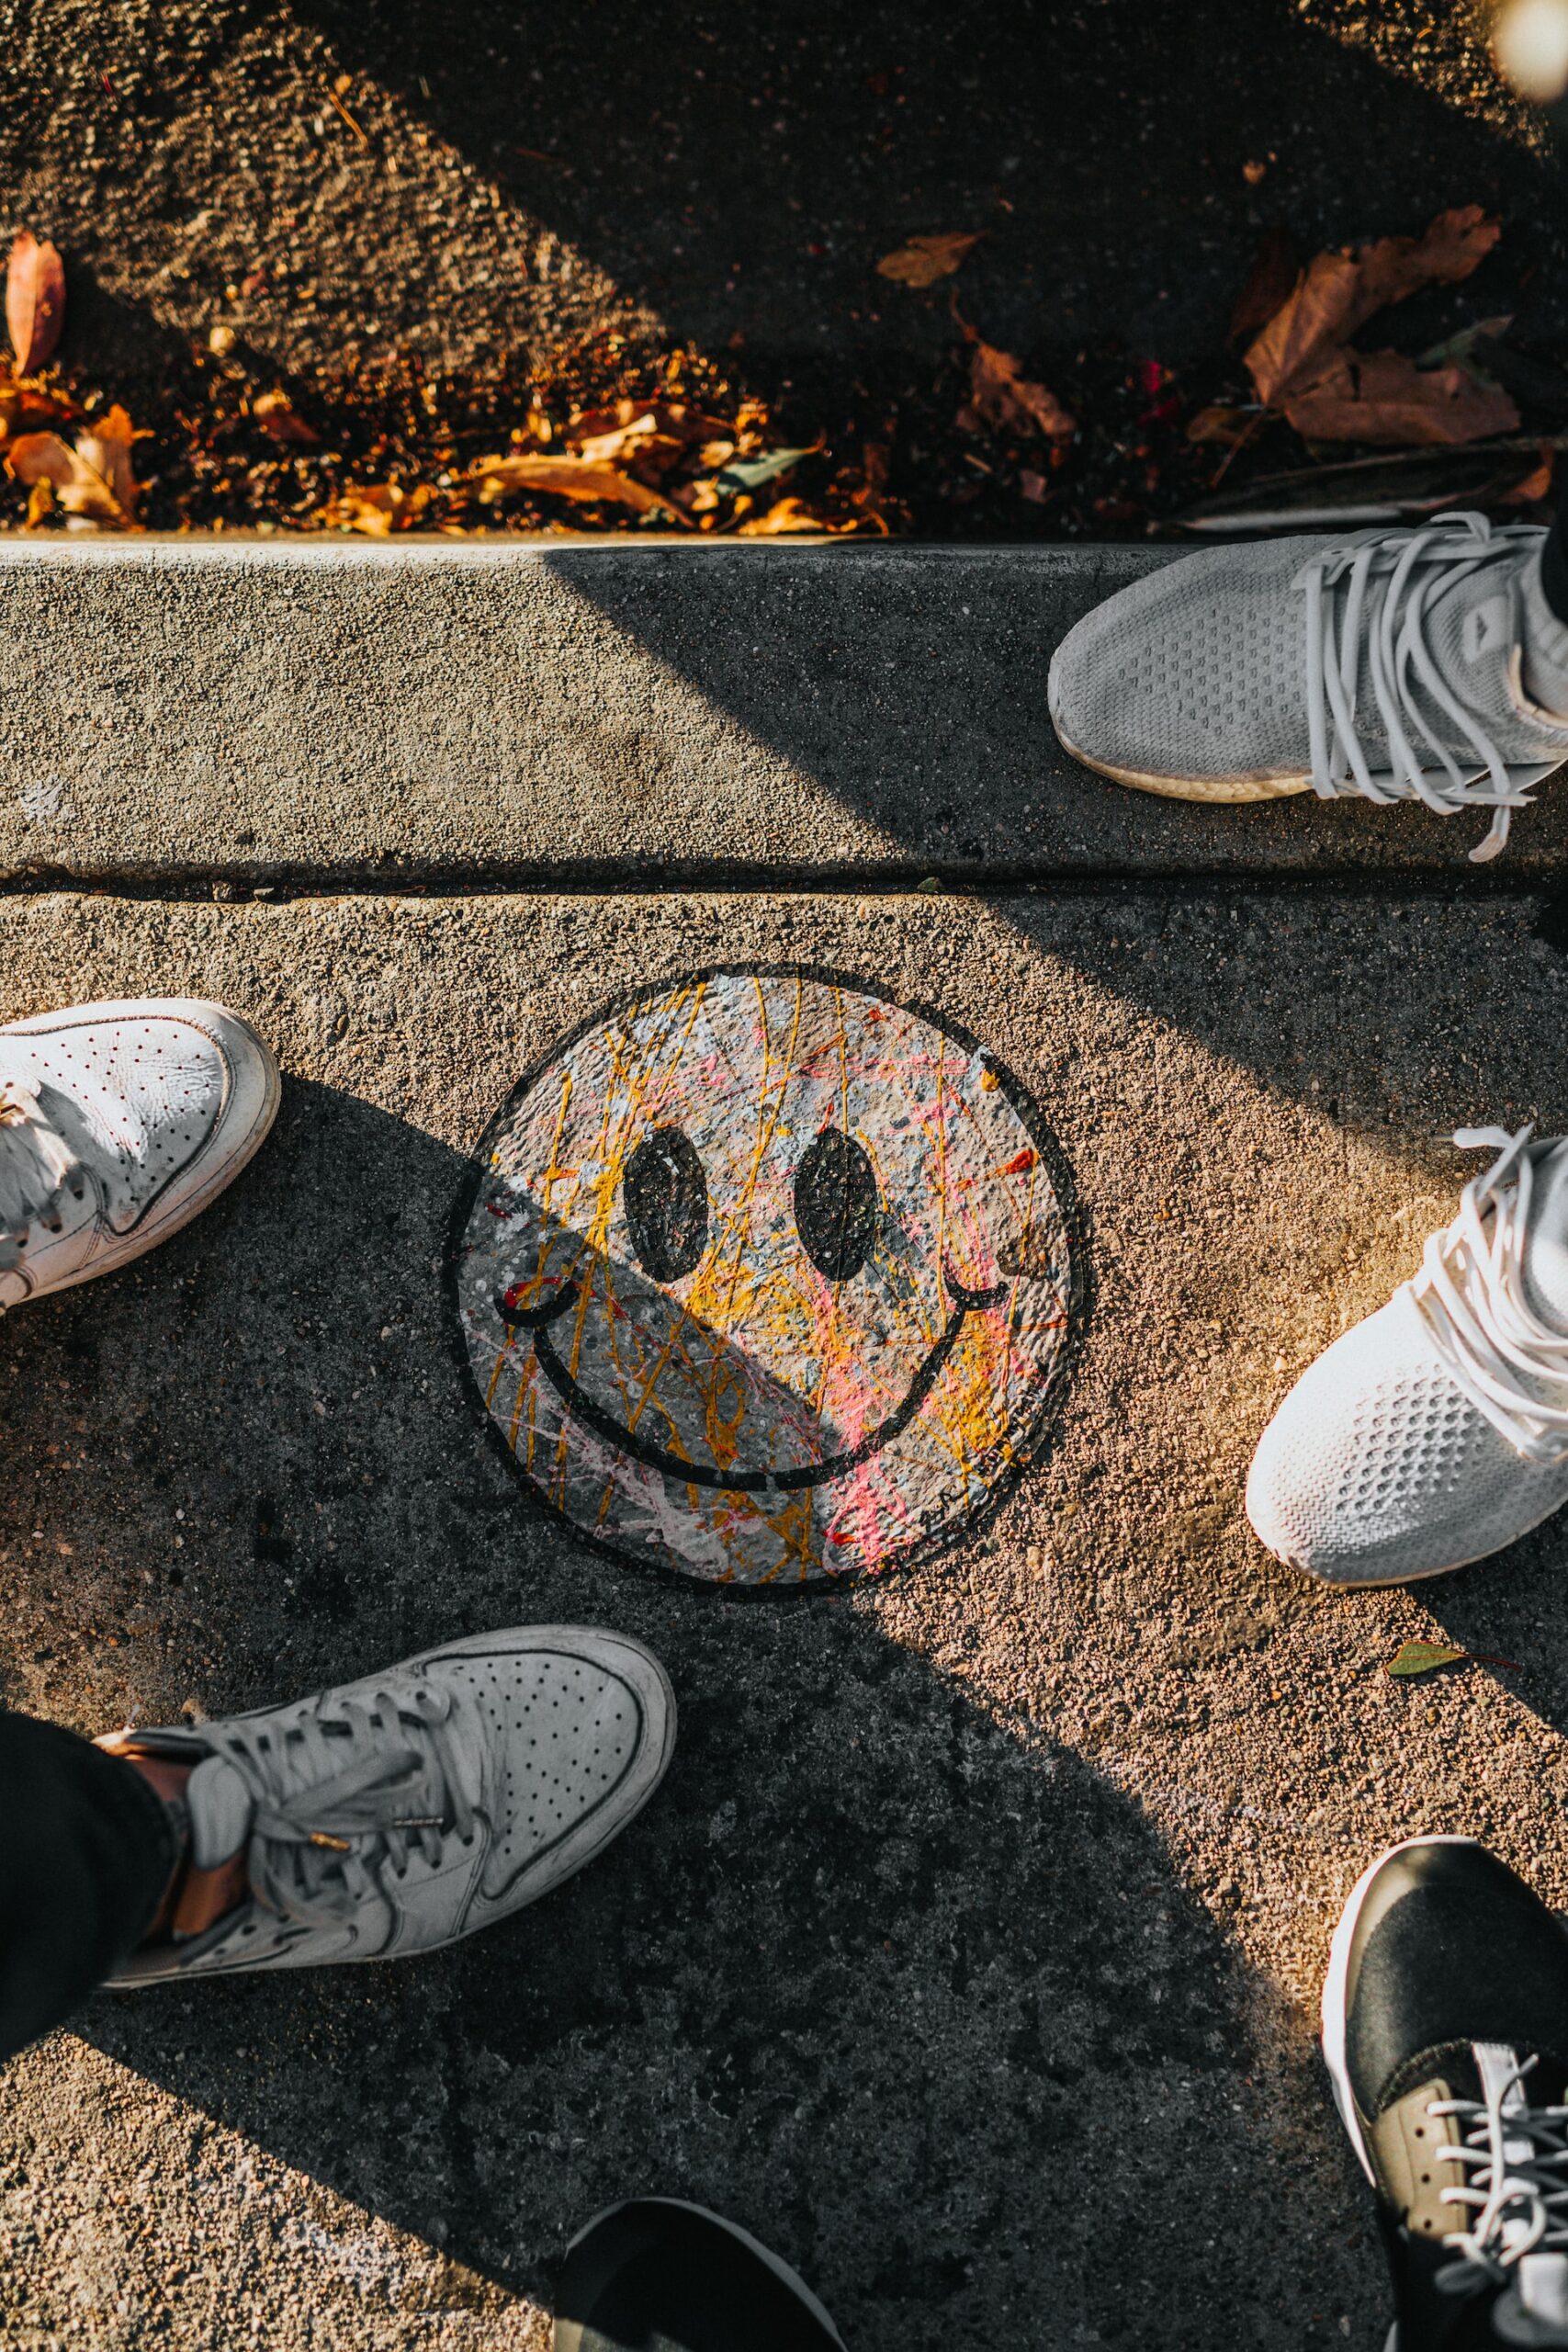 Smiley mit Kreide auf eine Strasse gemalt, drum herum Schuhspitzen.